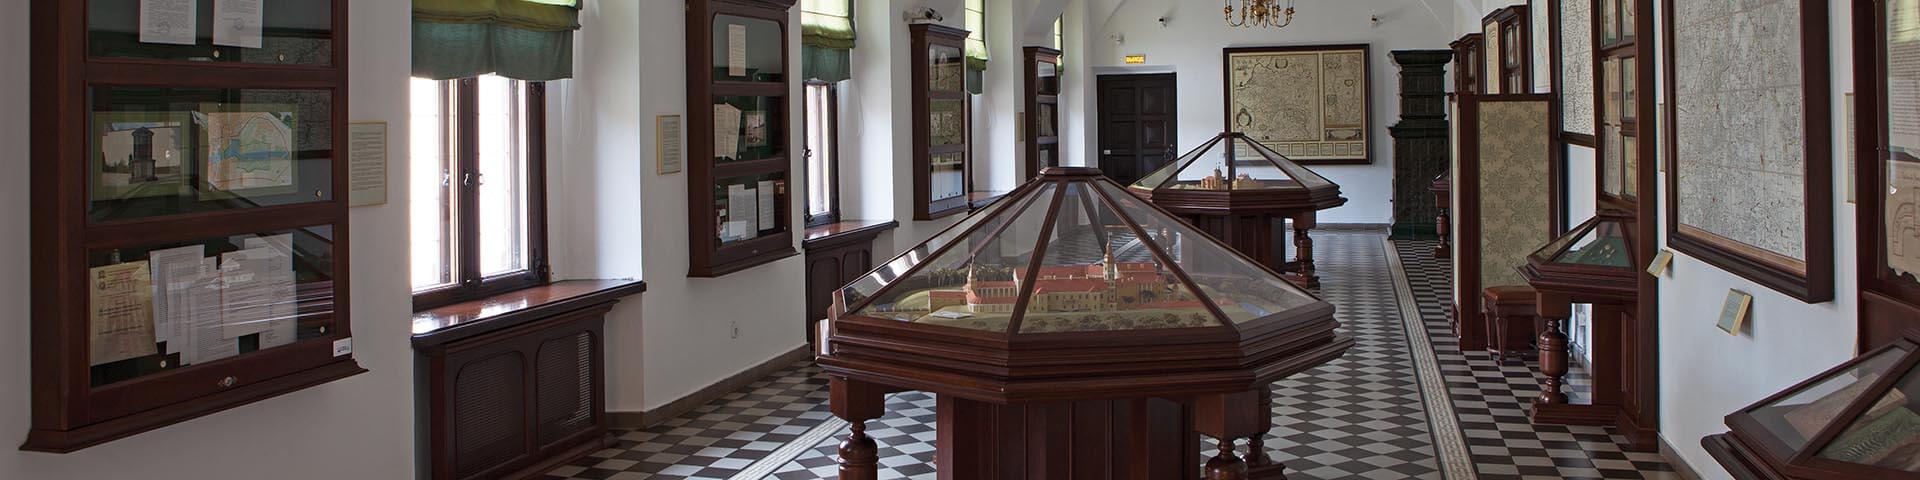 Обзорная музейная экскурсия «Дворец Радзивиллов» 